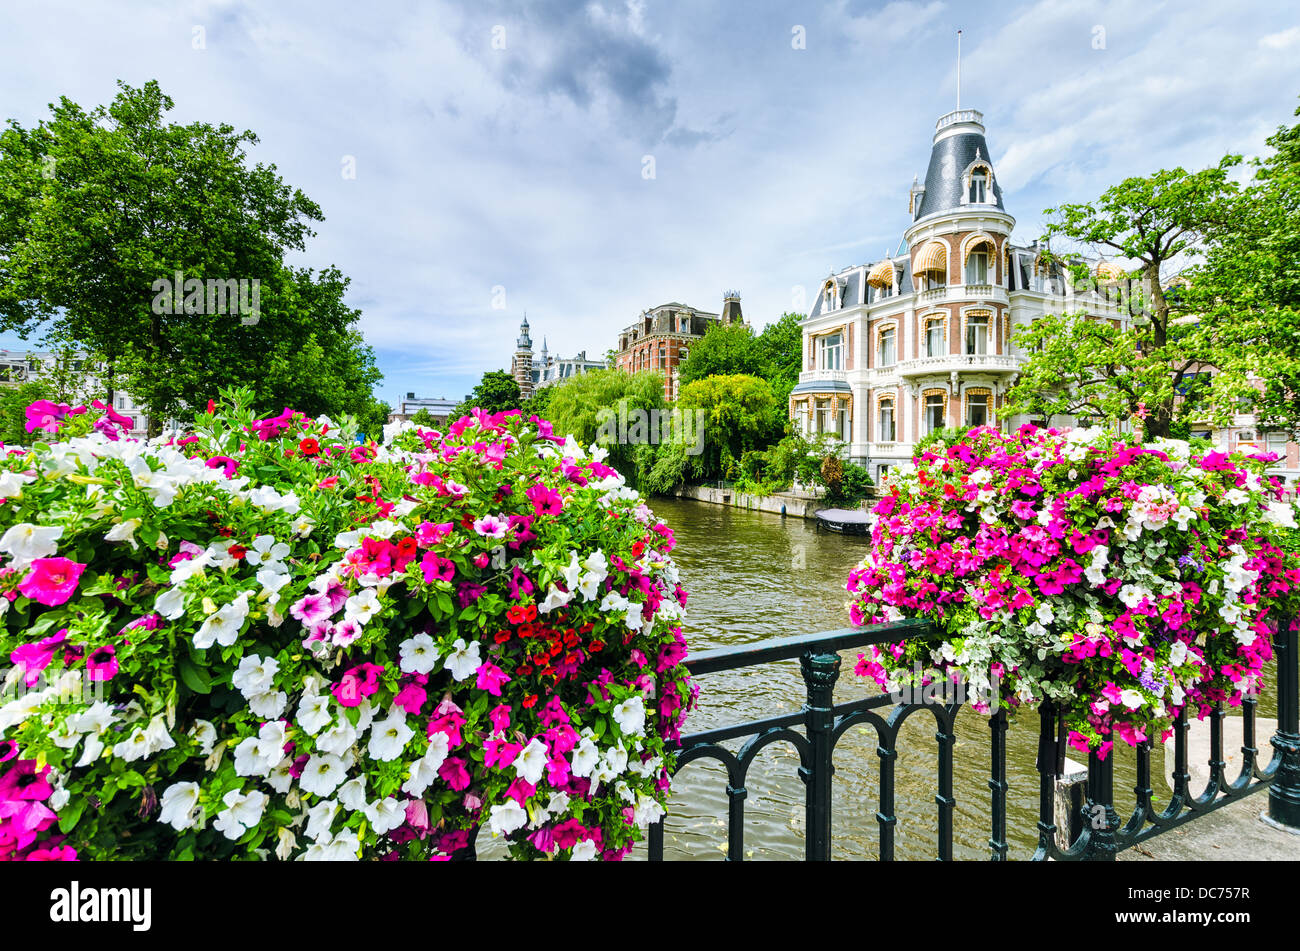 Scène d'un canal à Amsterdam avec des fleurs sur un pont Banque D'Images